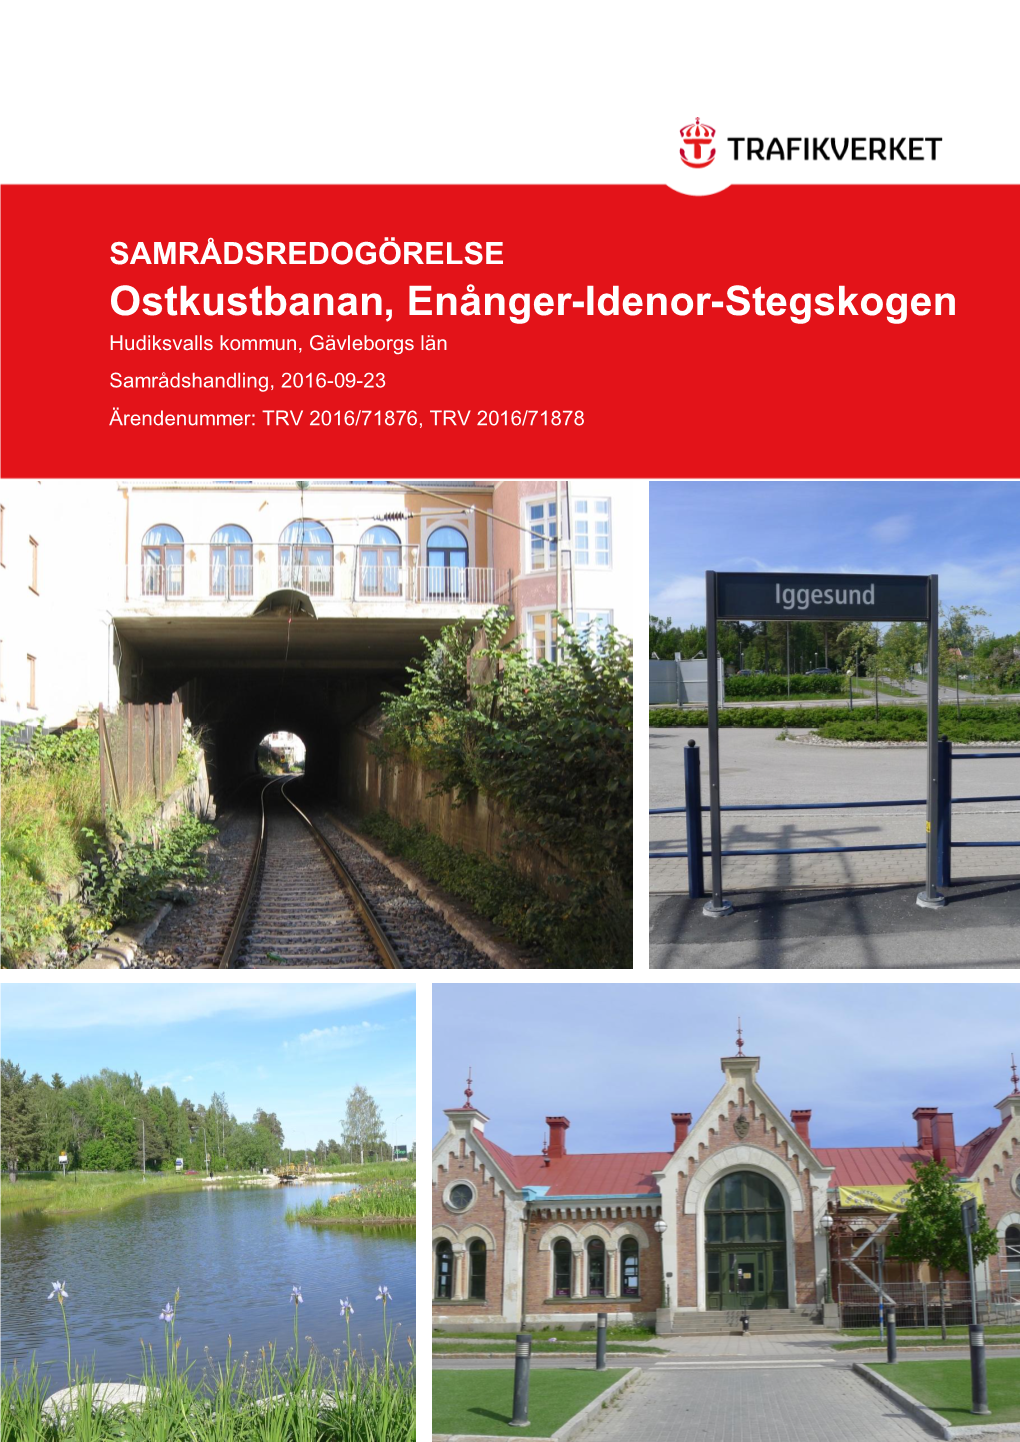 Ostkustbanan, Enånger-Idenor-Stegskogen